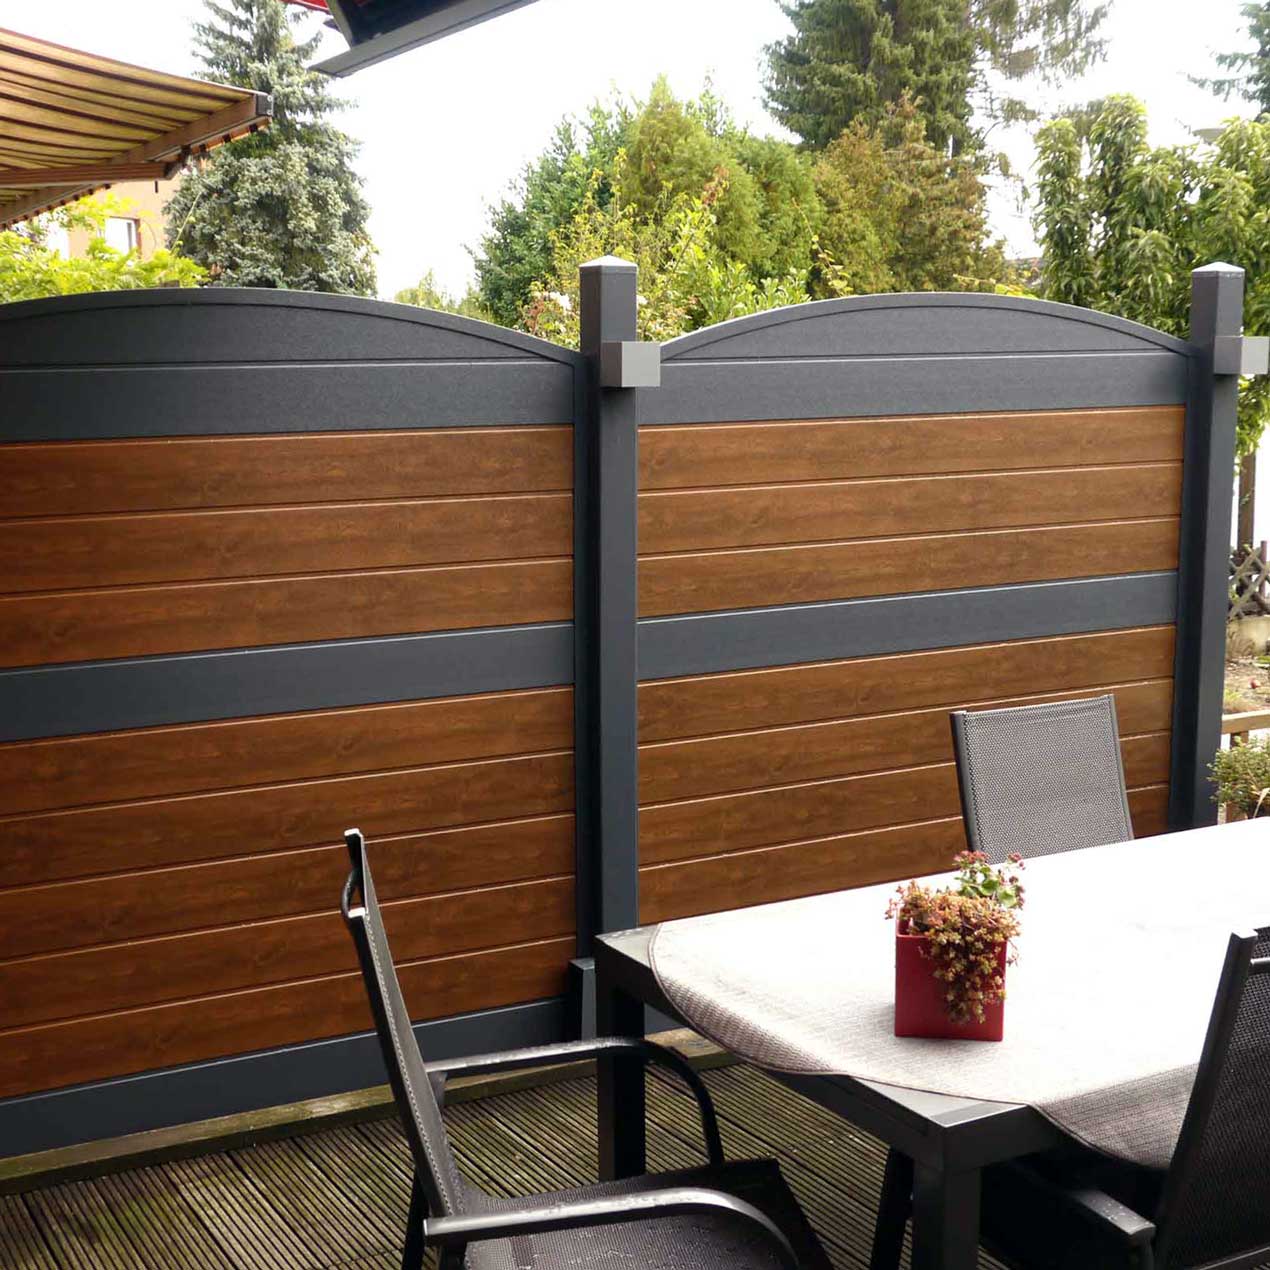 Sichtschutzzaun aus Kunststoff PVC in der Trend-Farbkombination Nussbaum und Anthrazit auf der Terrasse